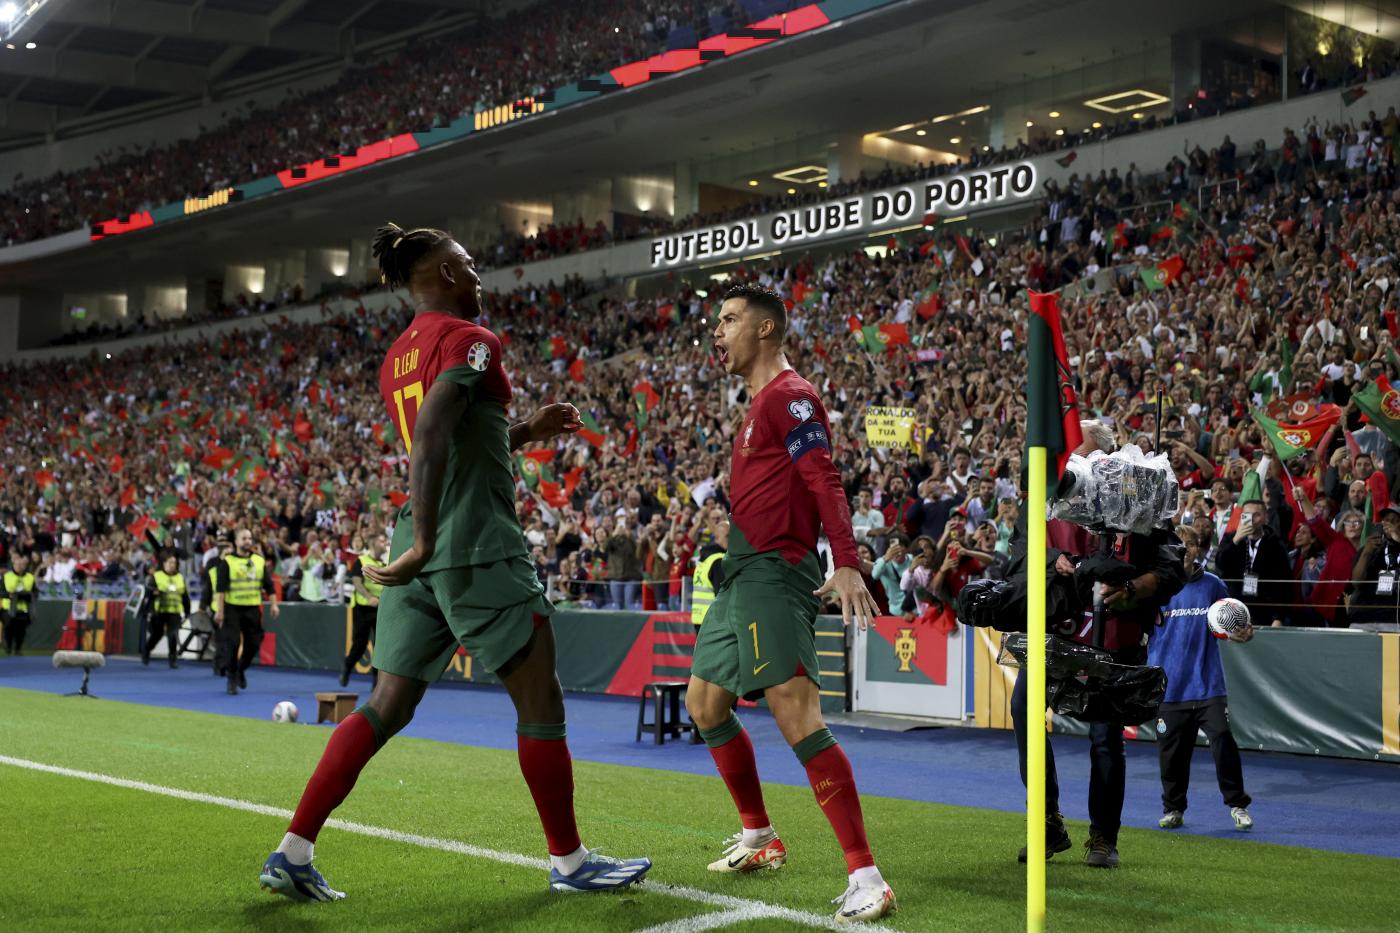 Portogallo-Repubblica Ceca, formazioni ufficiali: tandem Leao-Ronaldo, Schick dal 1'